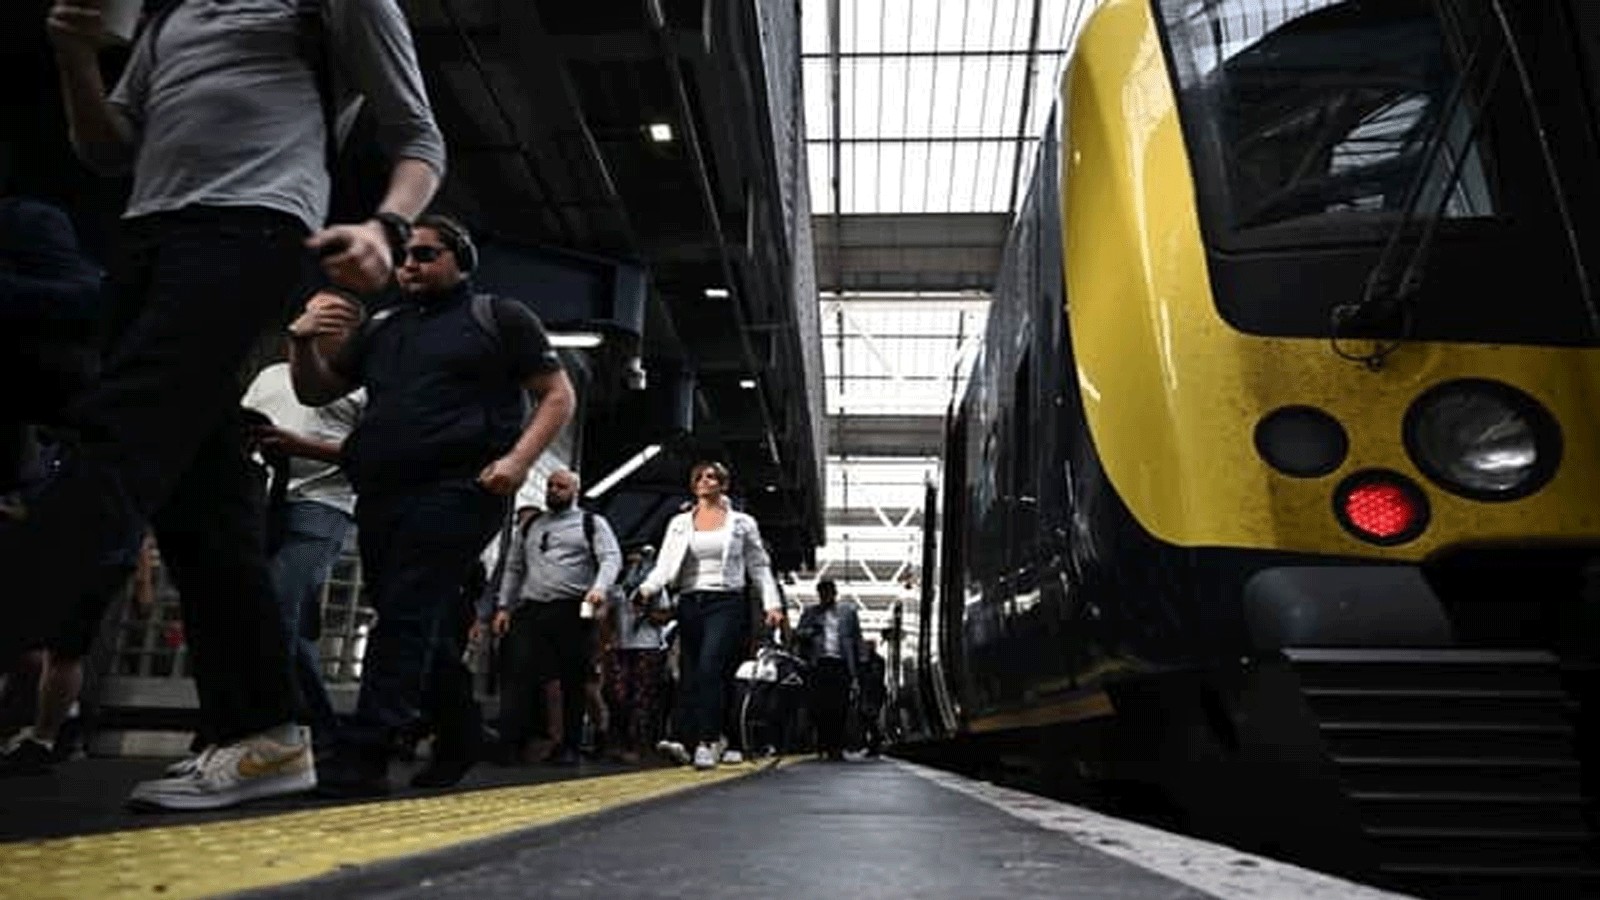 ركاب ينزلون من قطار في ظل أكبر إضراب للسكك الحديدية منذ أكثر من 30 عامًا في المملكة المتحدة